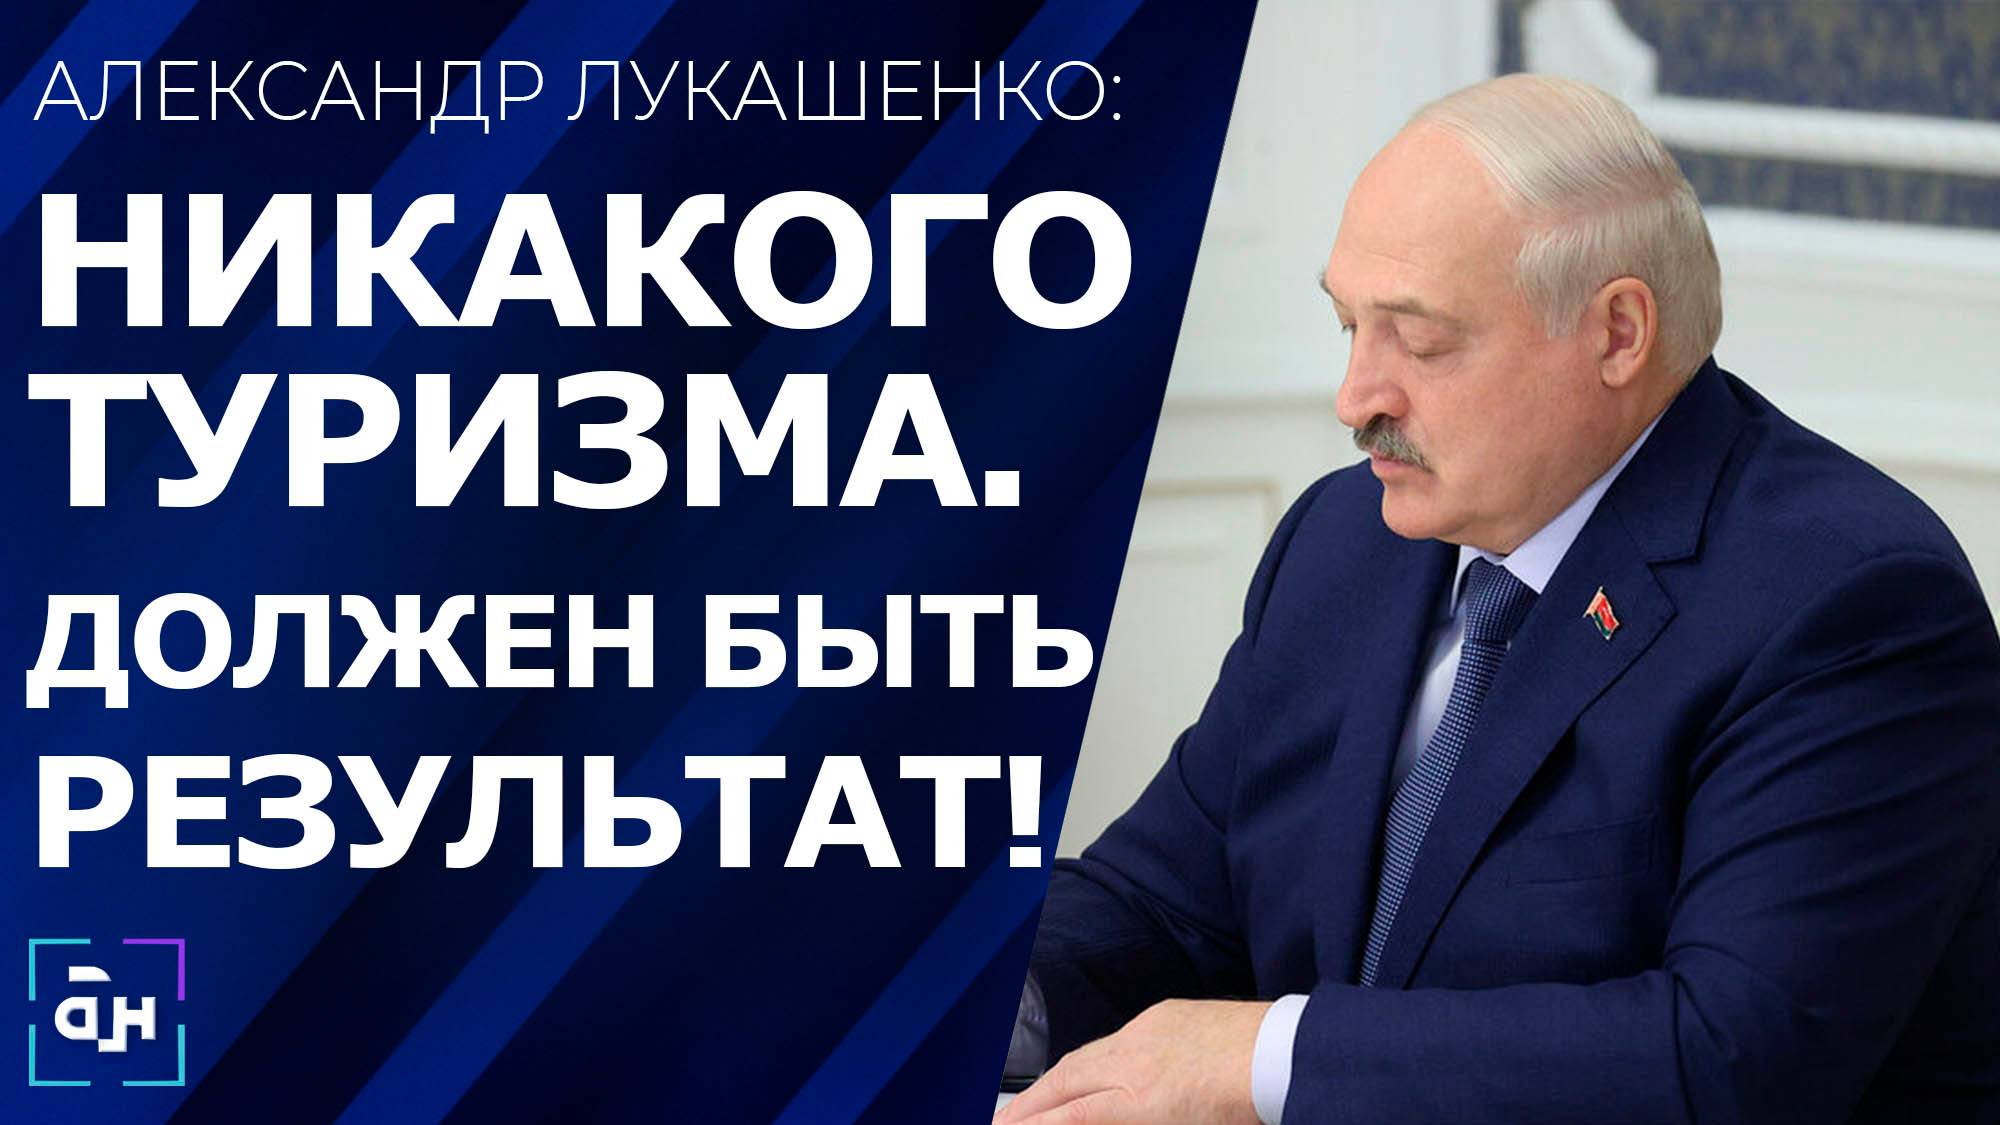 Лукашенко: к осени должны быть закрыты все вопросы. Панорама